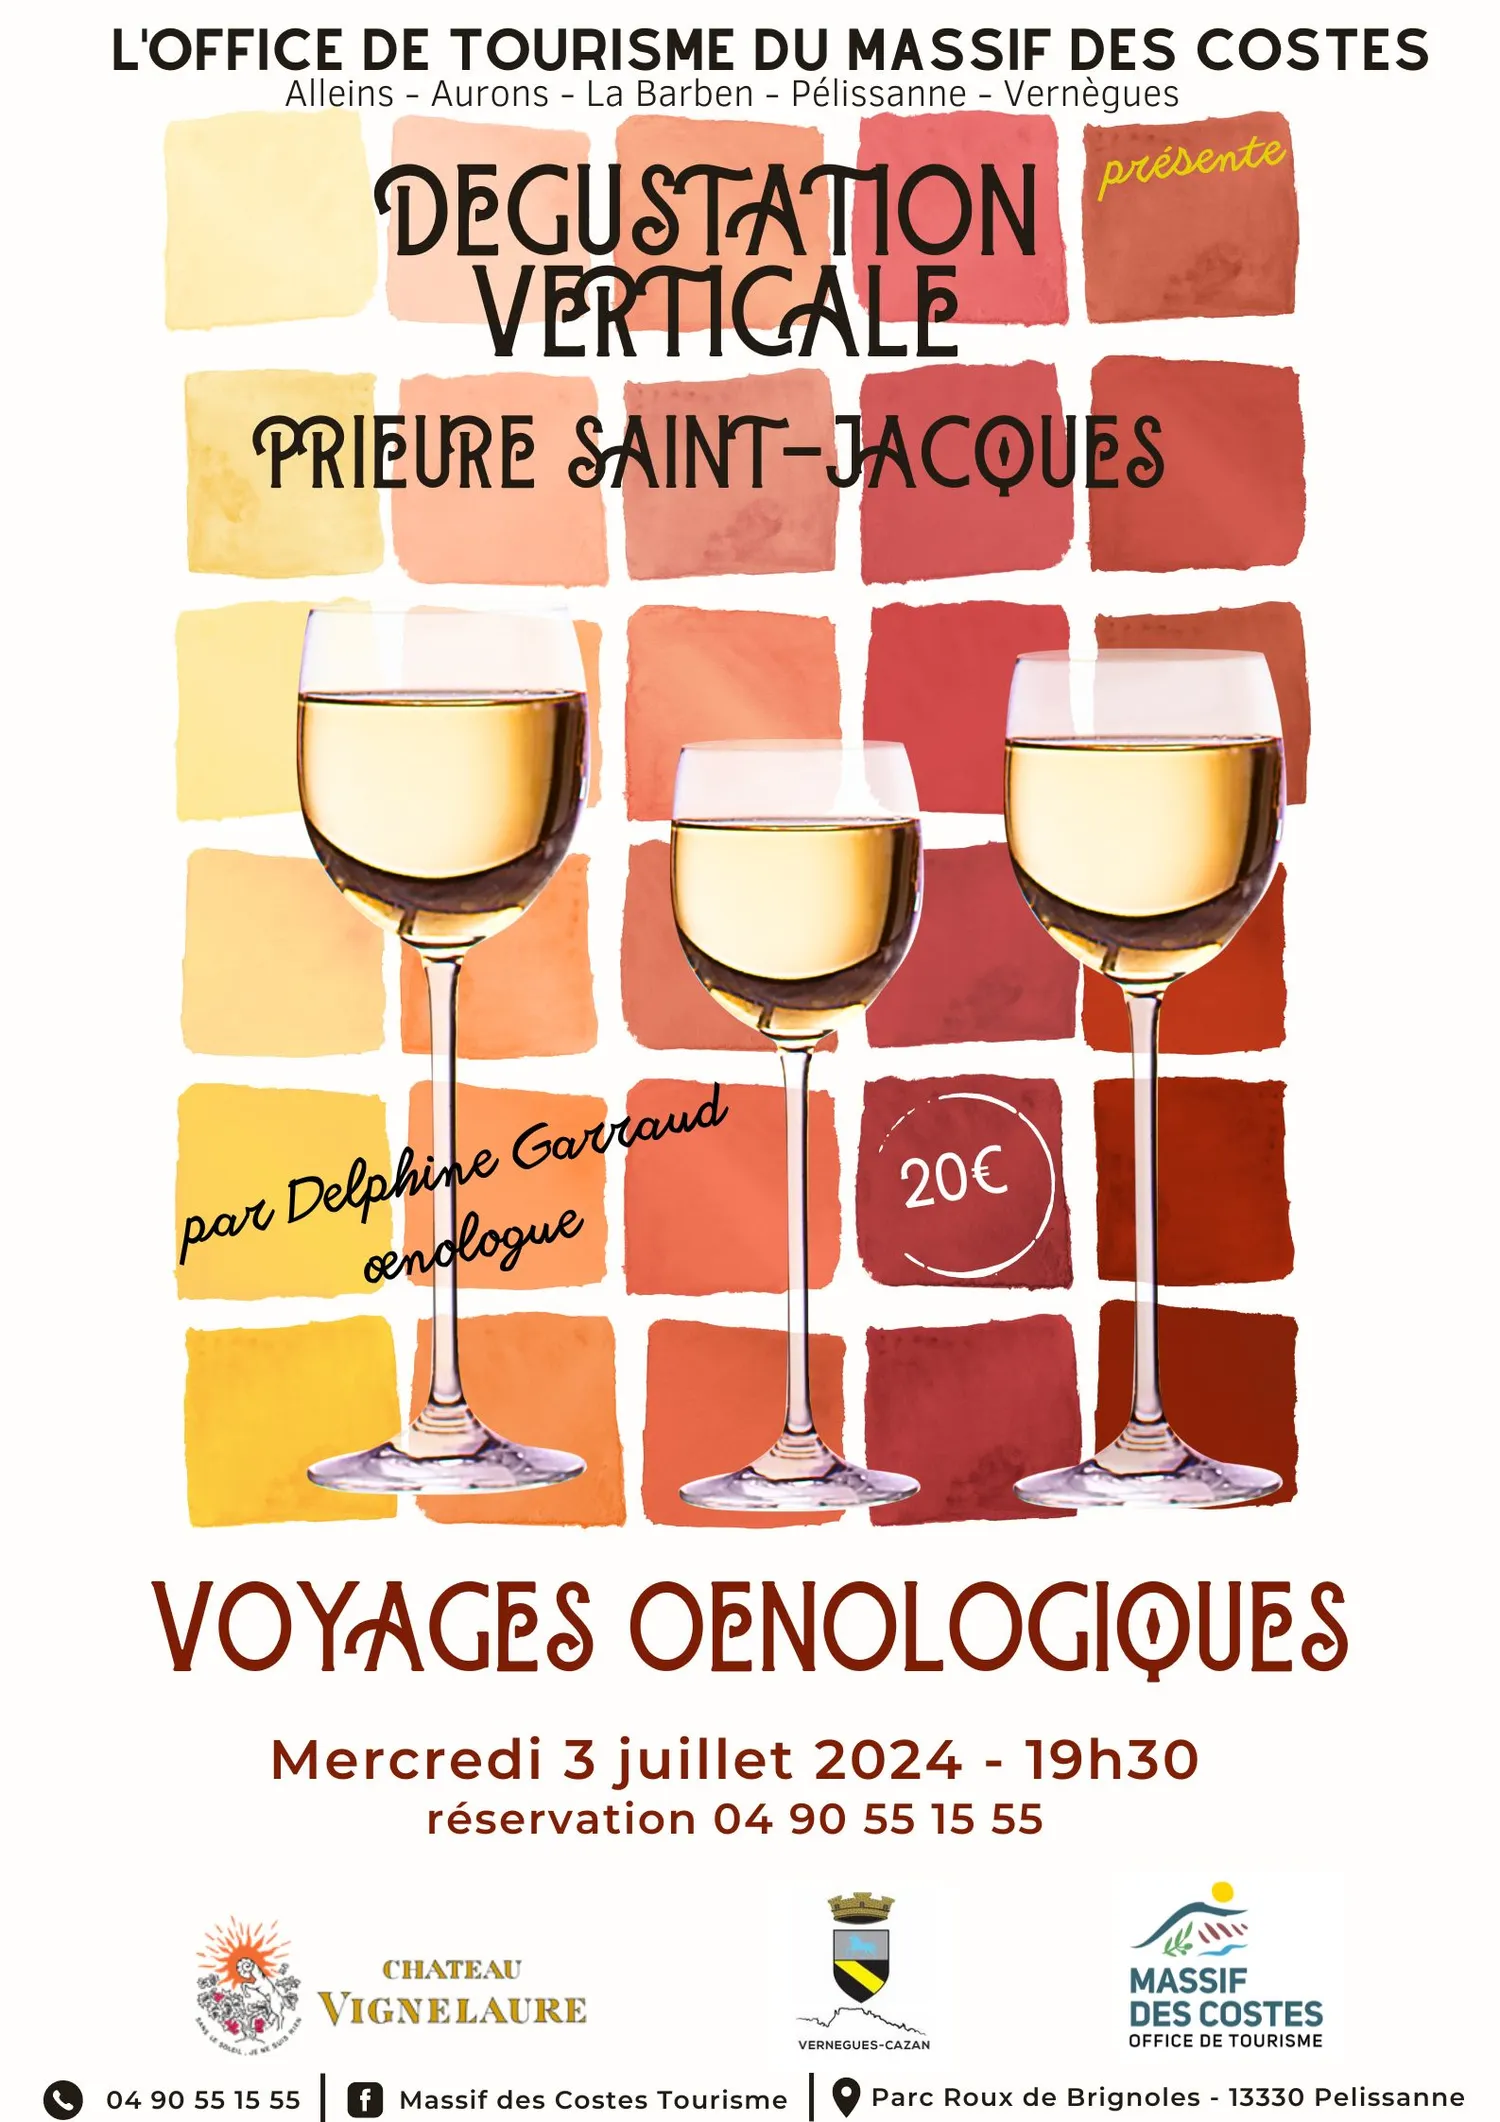 Image qui illustre: Dégustation Verticale - Voyage Œnologique à Vernègues - 0